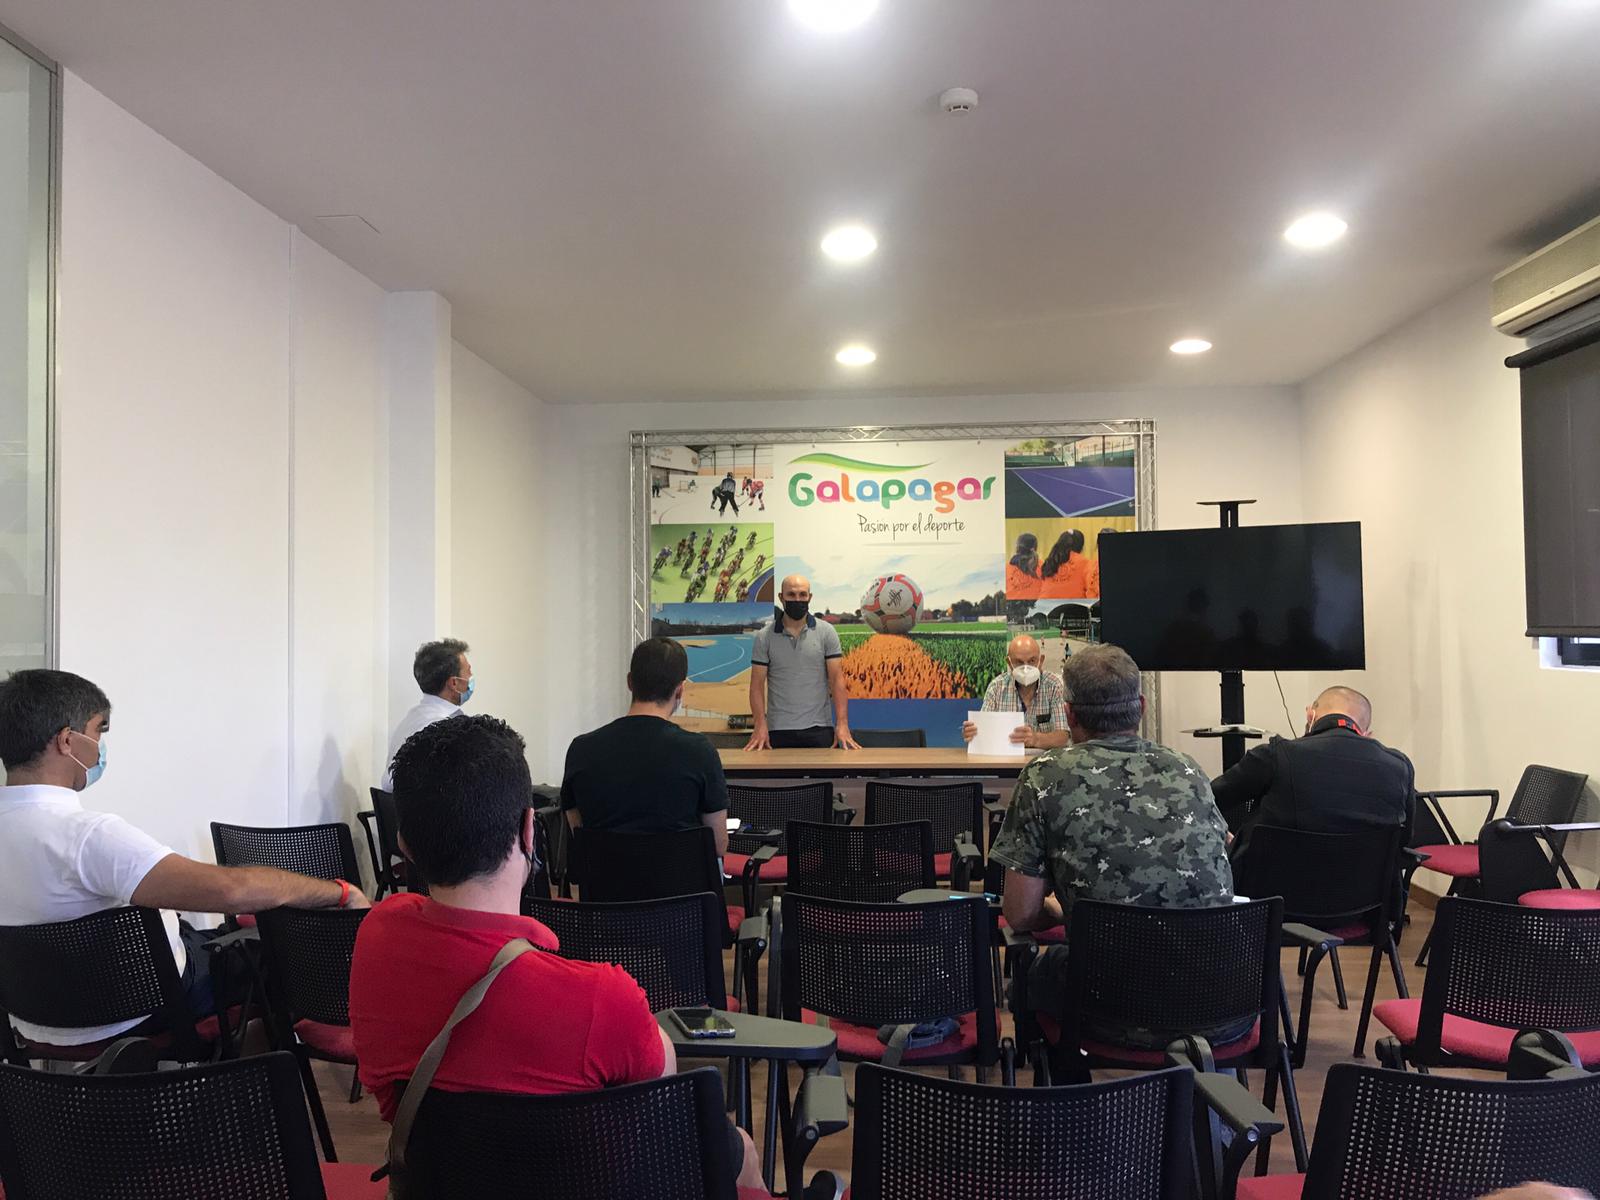 Primera reunión de organizadores de carreras de ciclocross de cara a la temporada 2020-2021